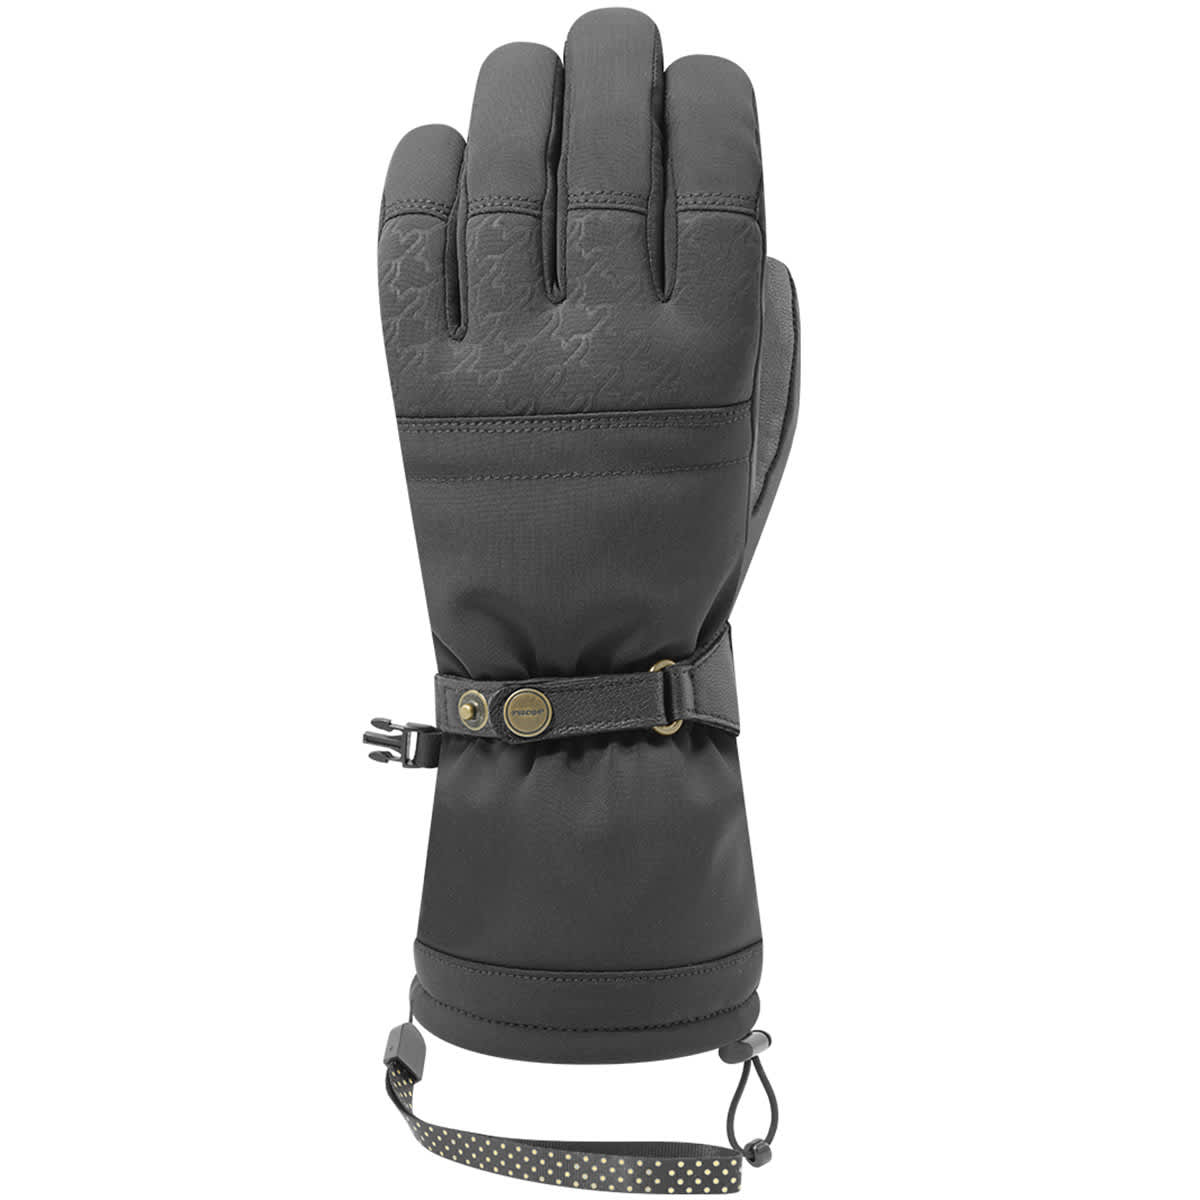 Racer G Snow 3 - Ski gloves - Women's